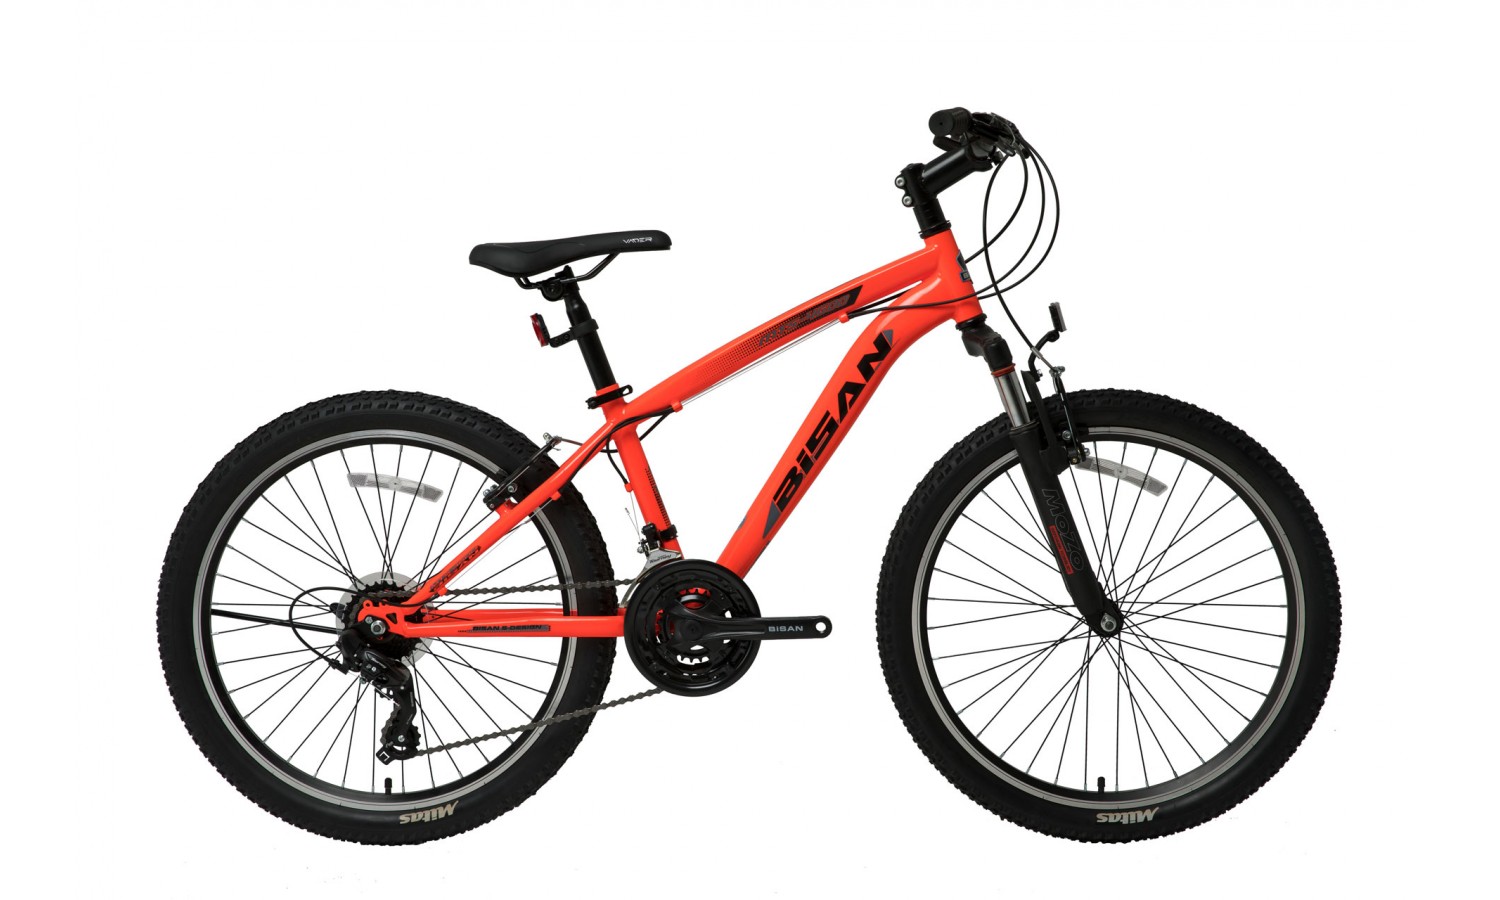 Bisan Mts 4600 27.5 V Dağ Bisikleti (Neon Turuncu Siyah)